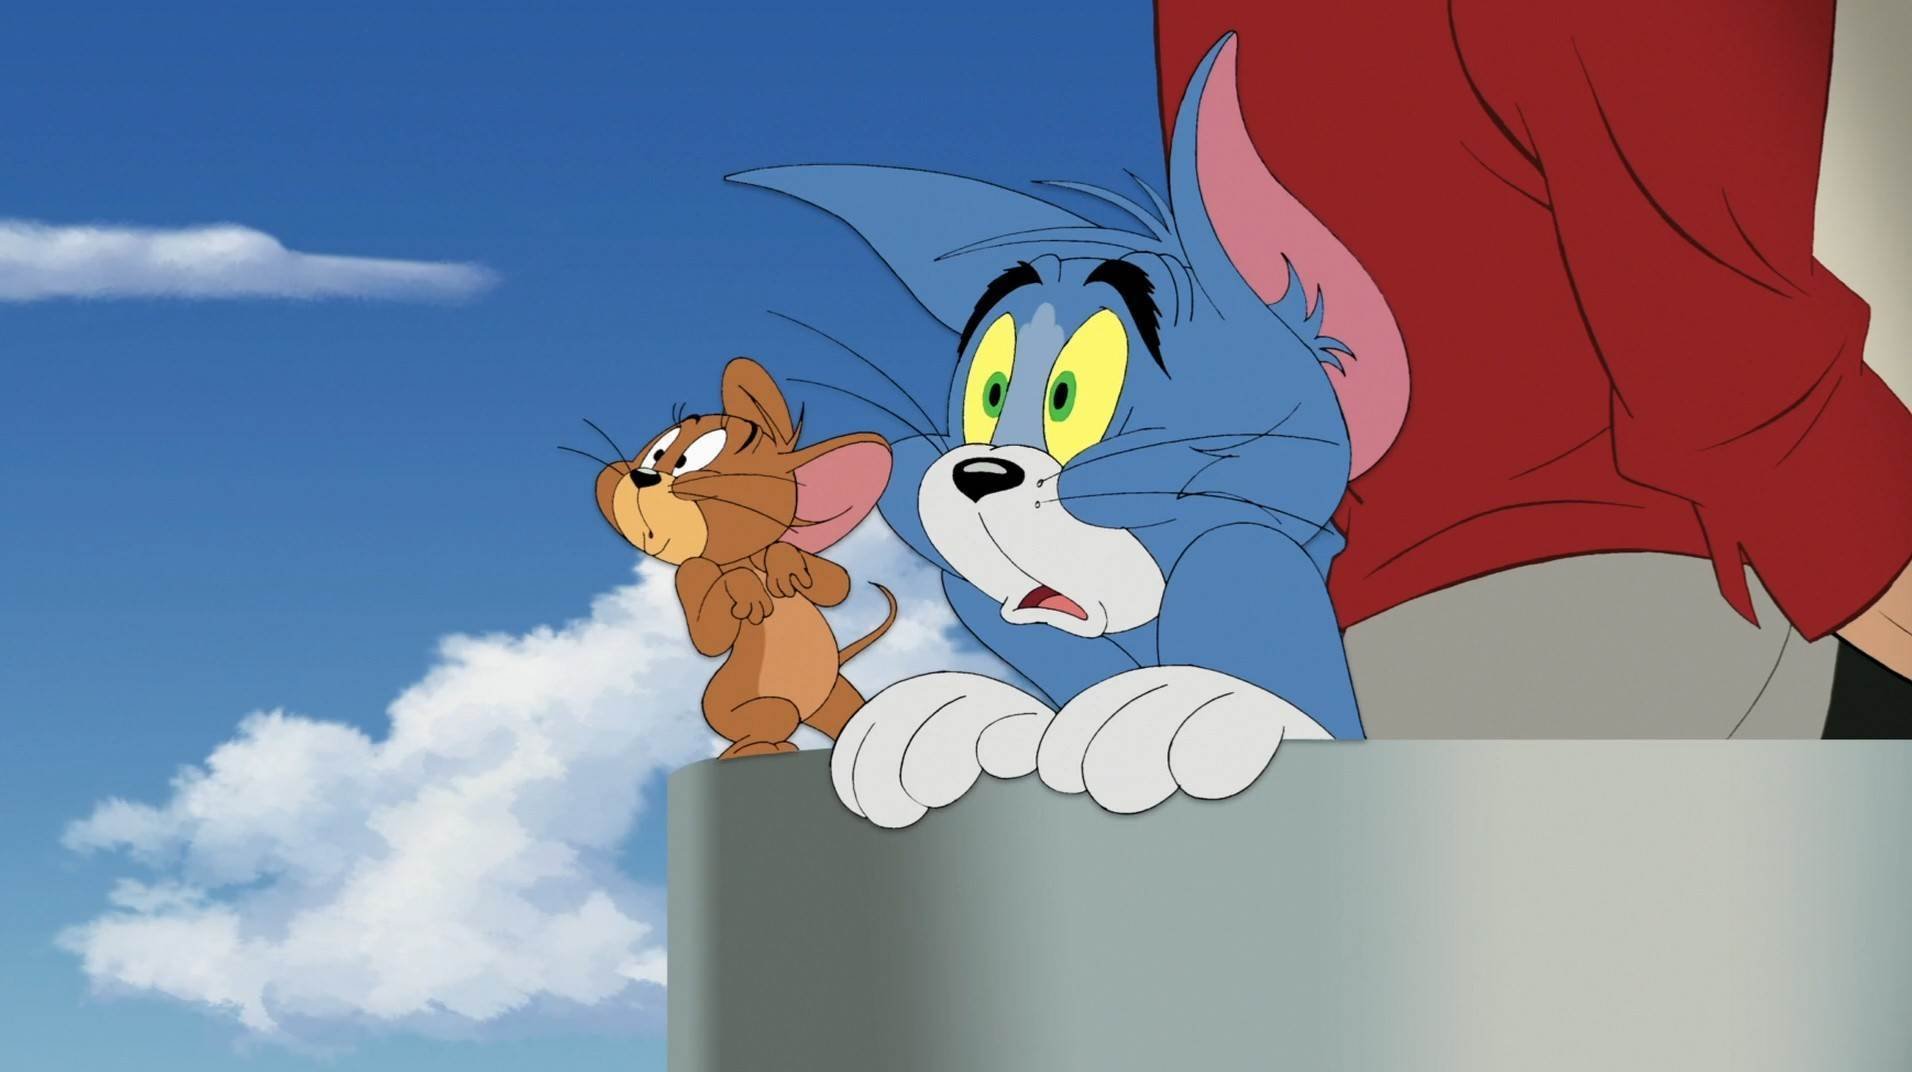 Jerry том и джерри. Tom and Jerry. Tom and Jerry 2020. Том и Джерри 1963-1967 том.